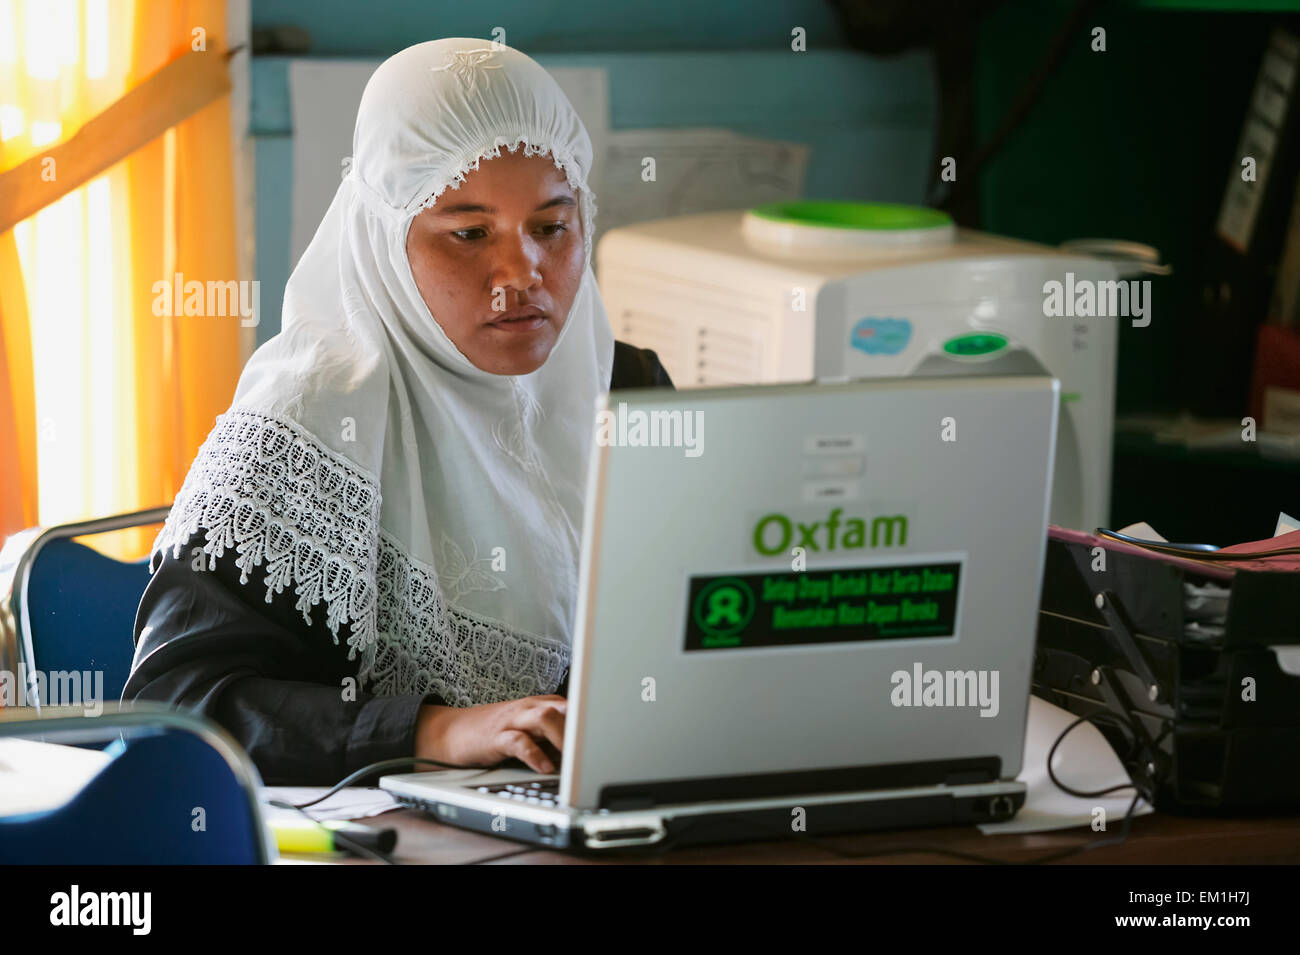 OXFAM-Mitarbeiter arbeiten im Büro nach dem Tsunami im Indischen Ozean; Lamno, Provinz Aceh, Sumatra, Indonesien Stockfoto